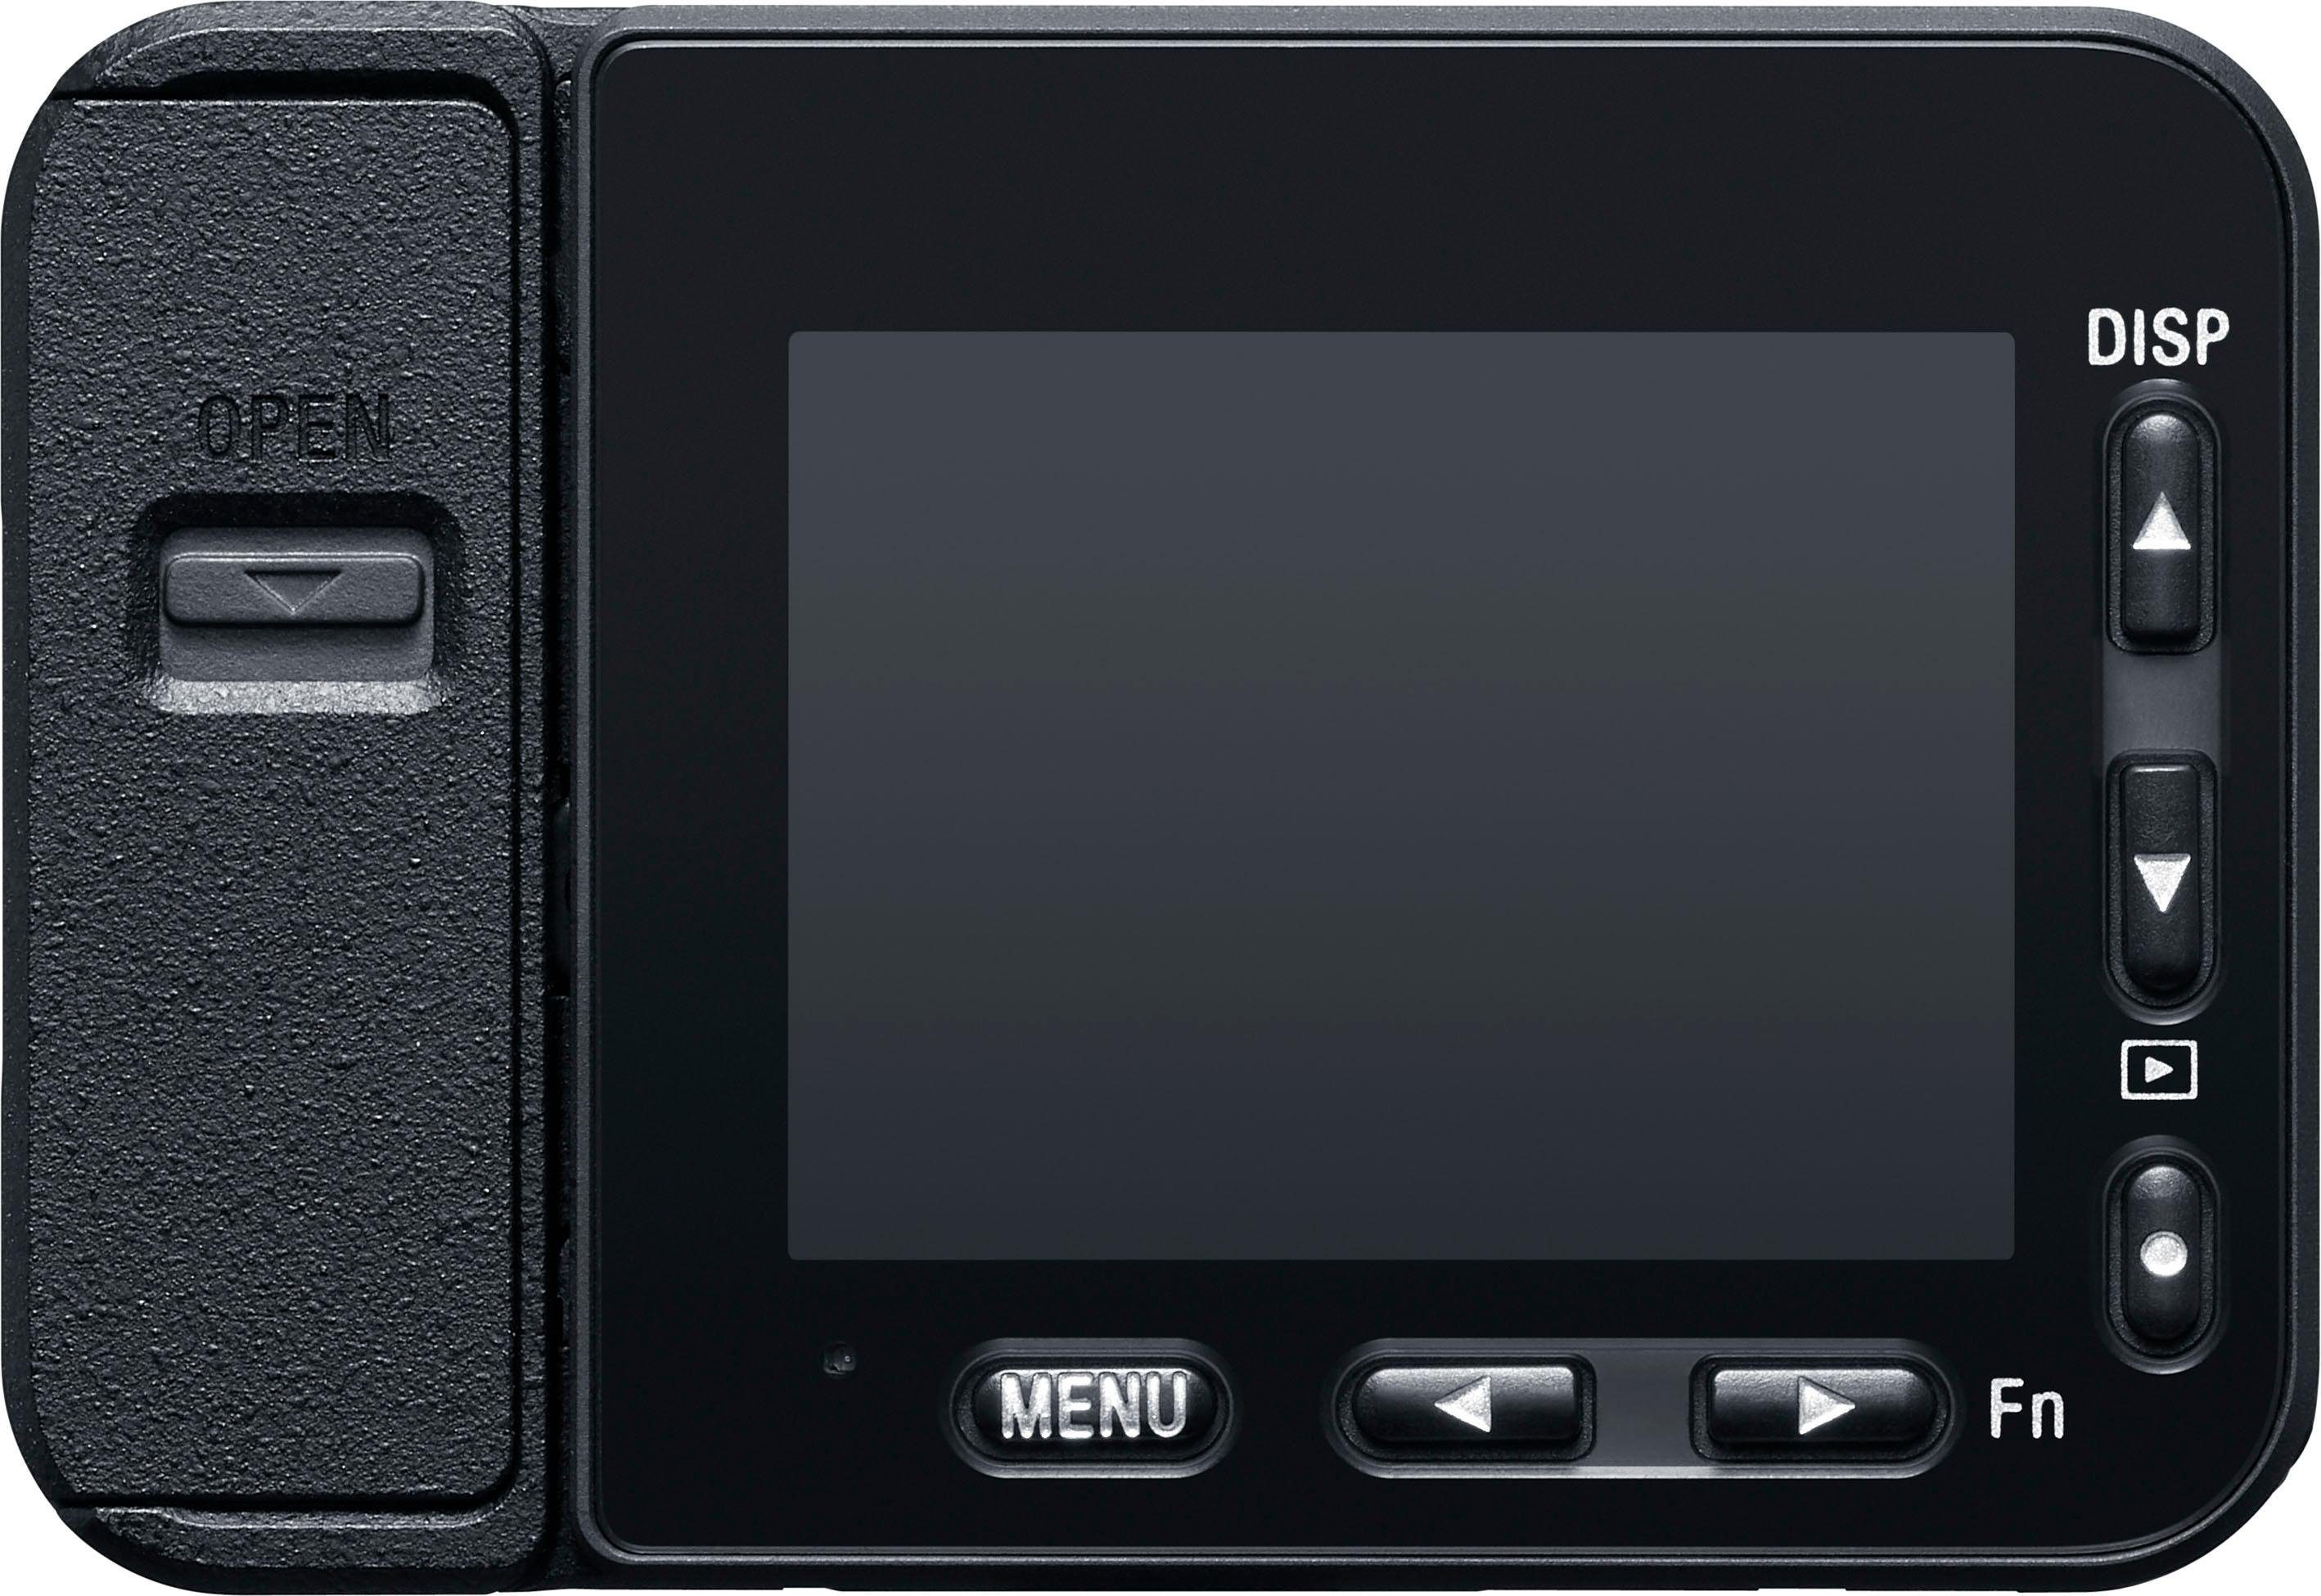 Sony RX0 II (DSC-RX0M2G) Kompaktkamera MP, 15,3 T* (ZEISS® 24-mm, Tessar Bluetooth, WLAN (Wi-Fi)